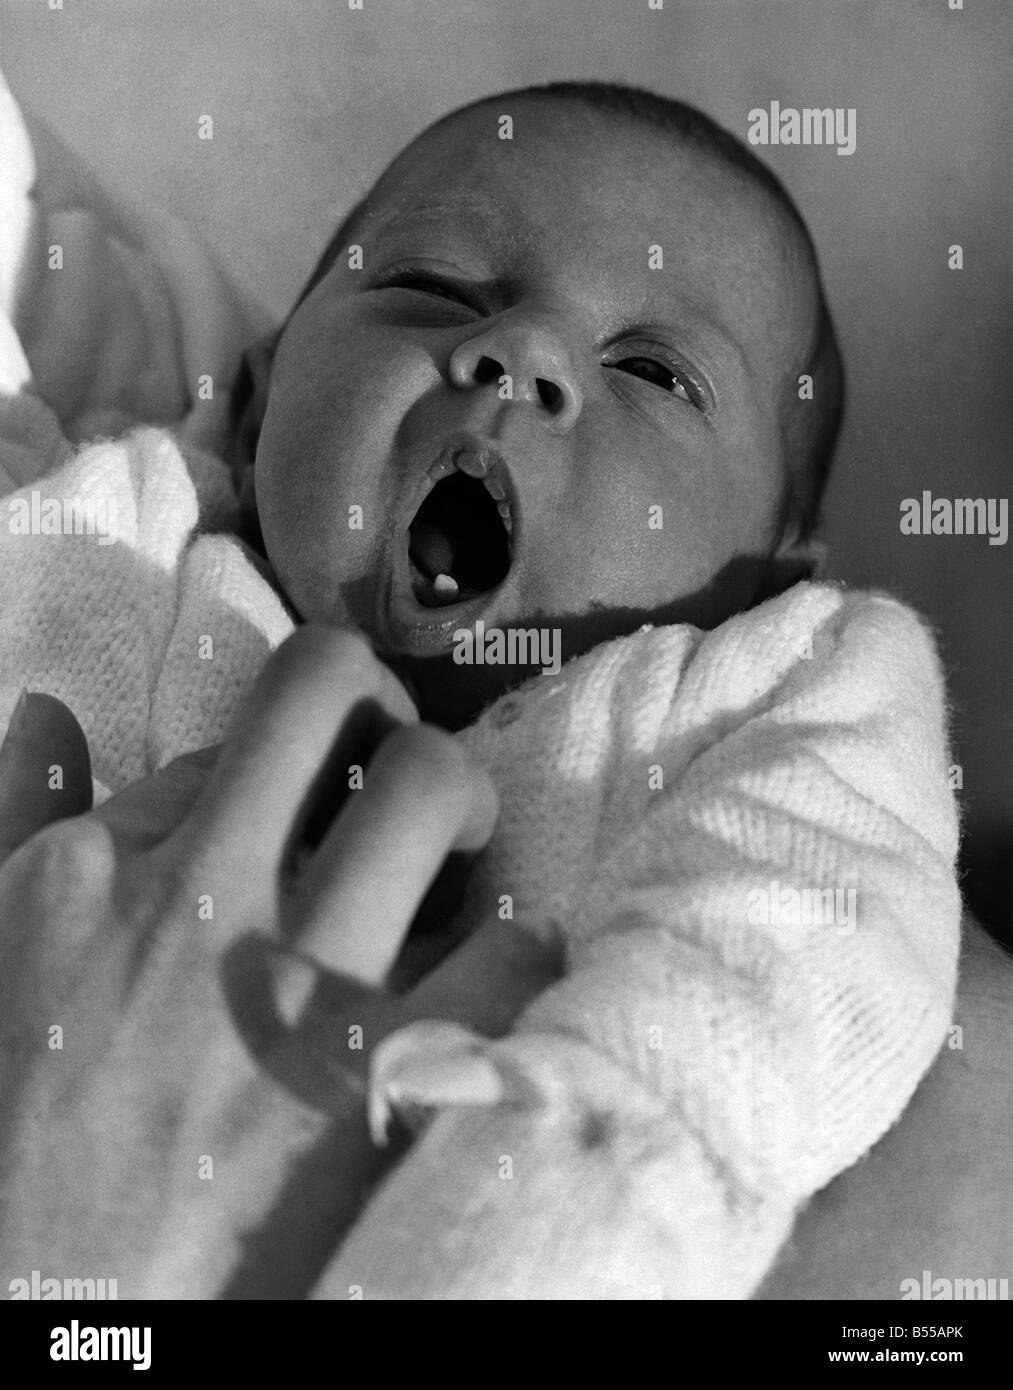 Tanya, le bébé qui est venu avec une première dent. C'est un grand moment dans toute la vie du bébé, de la coupe de la première dent. Pour ces étapes par les parents ne les progrès de leur progéniture graphique. Vous pouvez comprendre, alors , pourquoi Roger Fox et son épouse Elizabeth sentir spécialement fière de leur premier-né, Tanya, photographié ici. lorsqu'elle est née il y a trois semaines - pesant 71b.20z. - Sa première dent a déjà été à travers. Un vrai whopper, droit dans l'avant.mettant son mois d'avance sur ses contemporains. Foger, 24, un opérateur de fibre de verre, dit Tanya étonné les infirmières à la maison de maternité à Woking, Surrey Banque D'Images